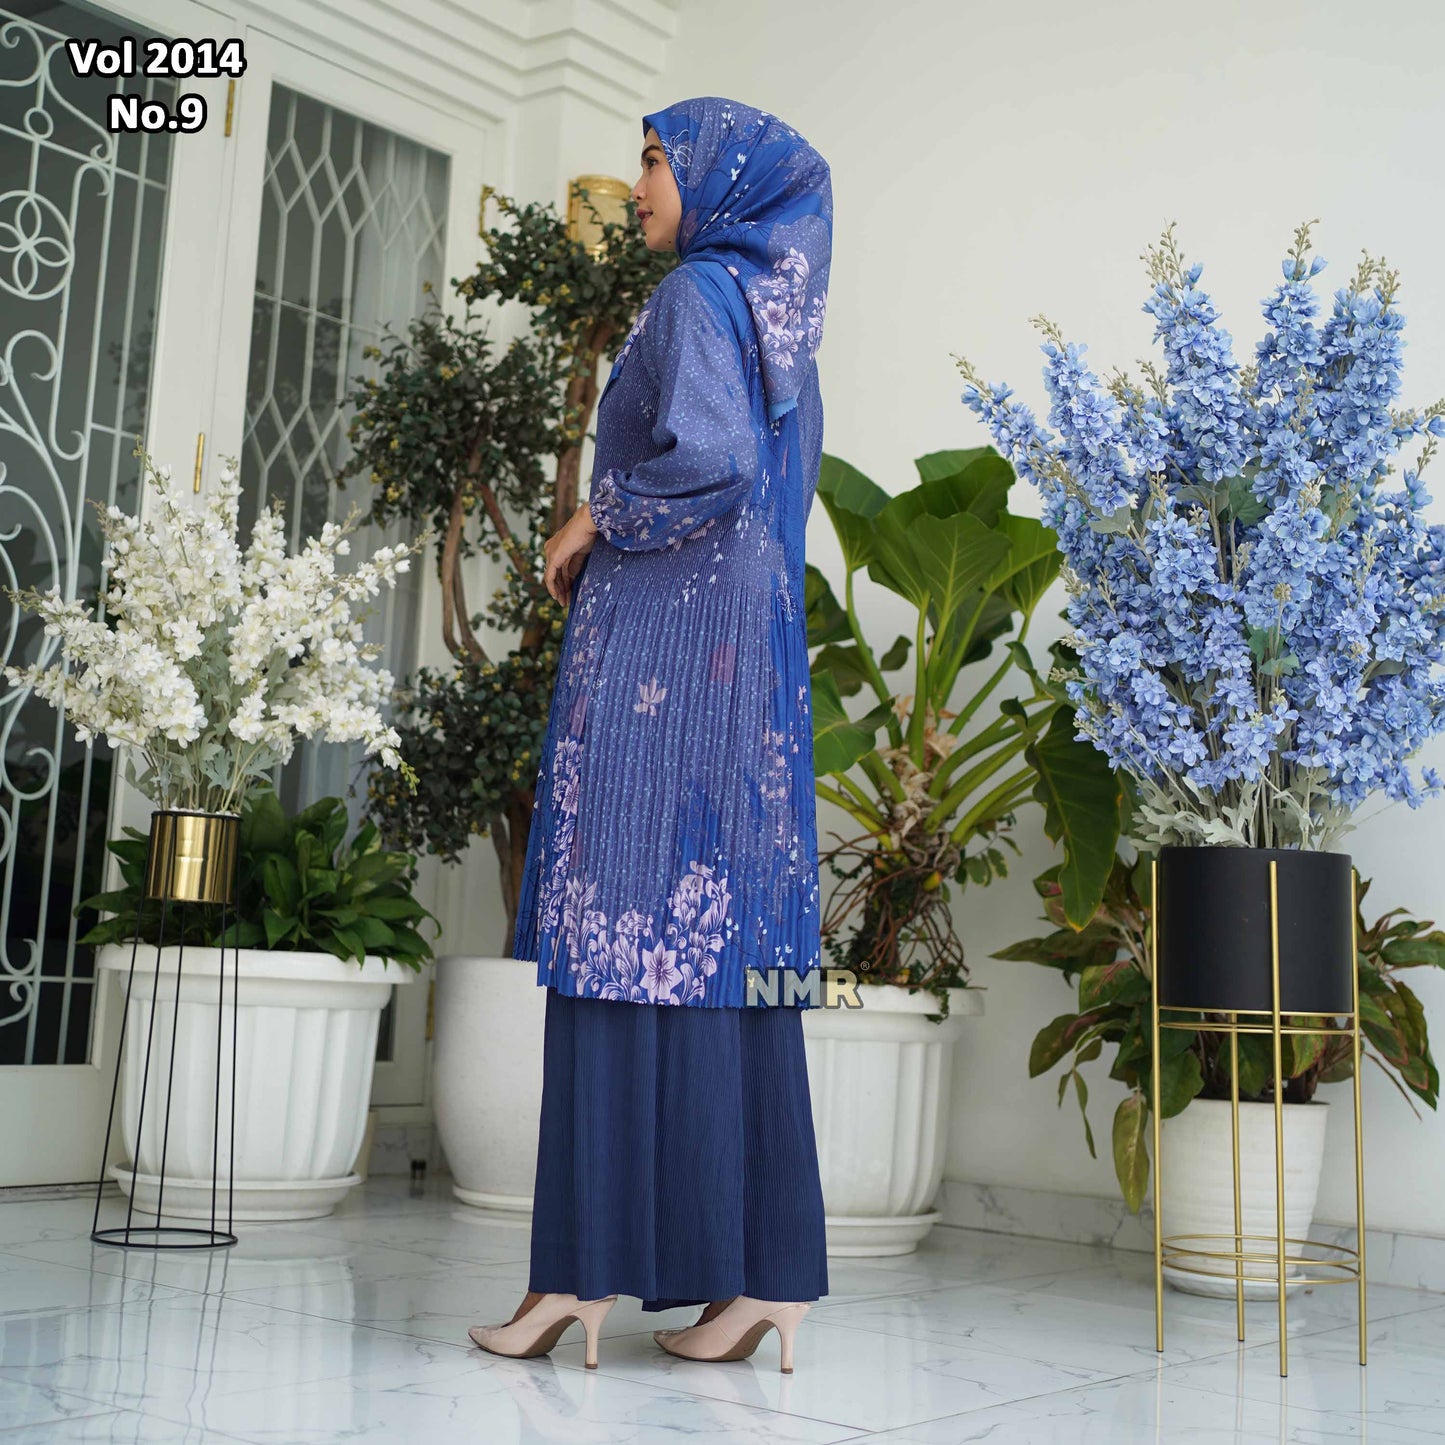 NMR Setelan Celana Kulot Tunik Katun Paris Plisket Vol 2014-9 ( Inc Hijab)